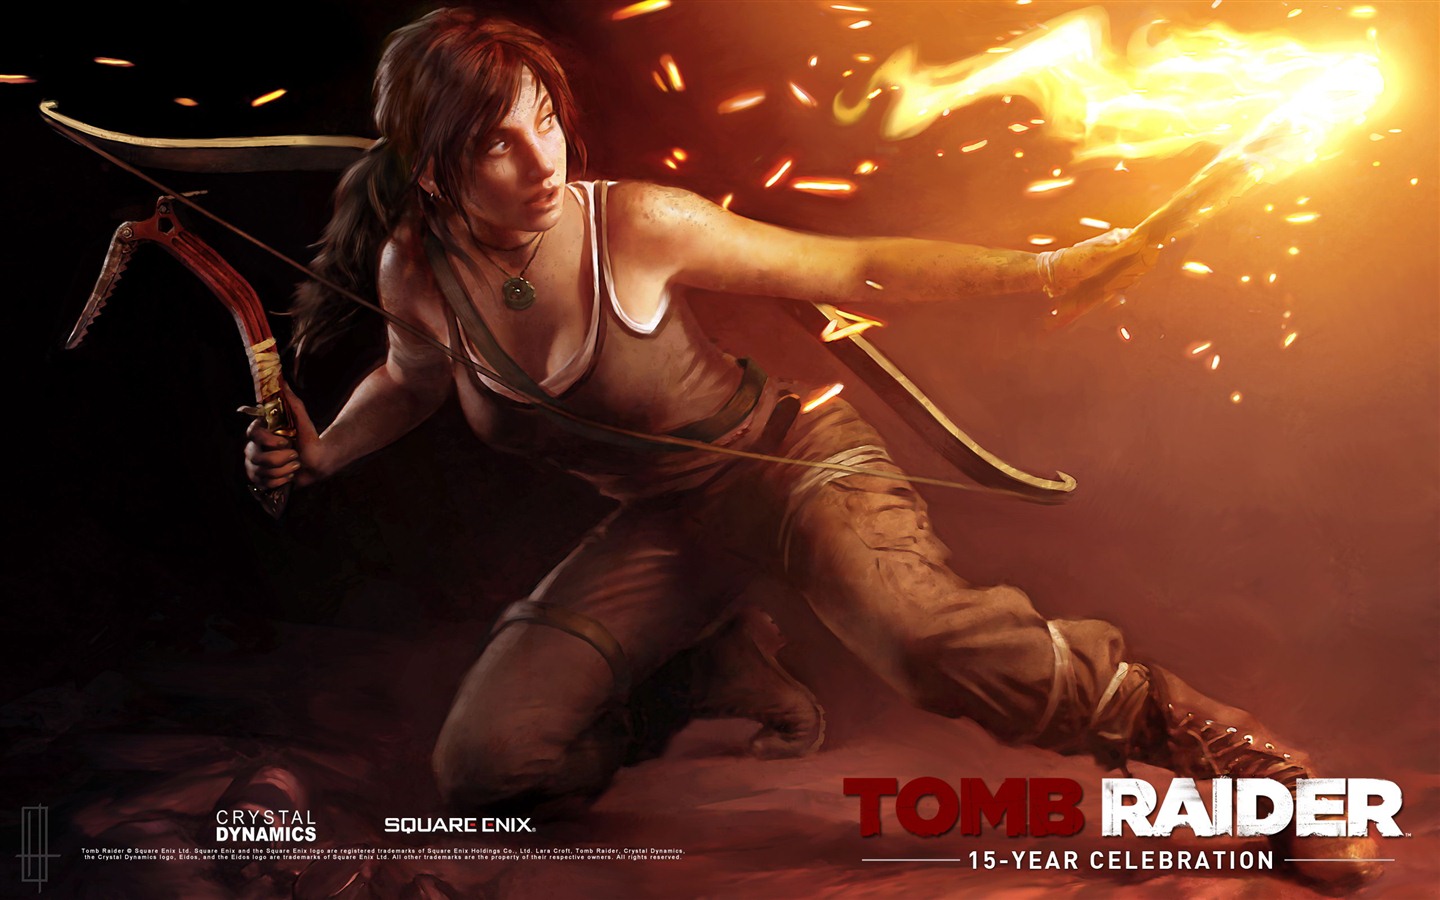 Tomb Raider 15-Year Celebration 古墓丽影15周年纪念版 高清壁纸11 - 1440x900